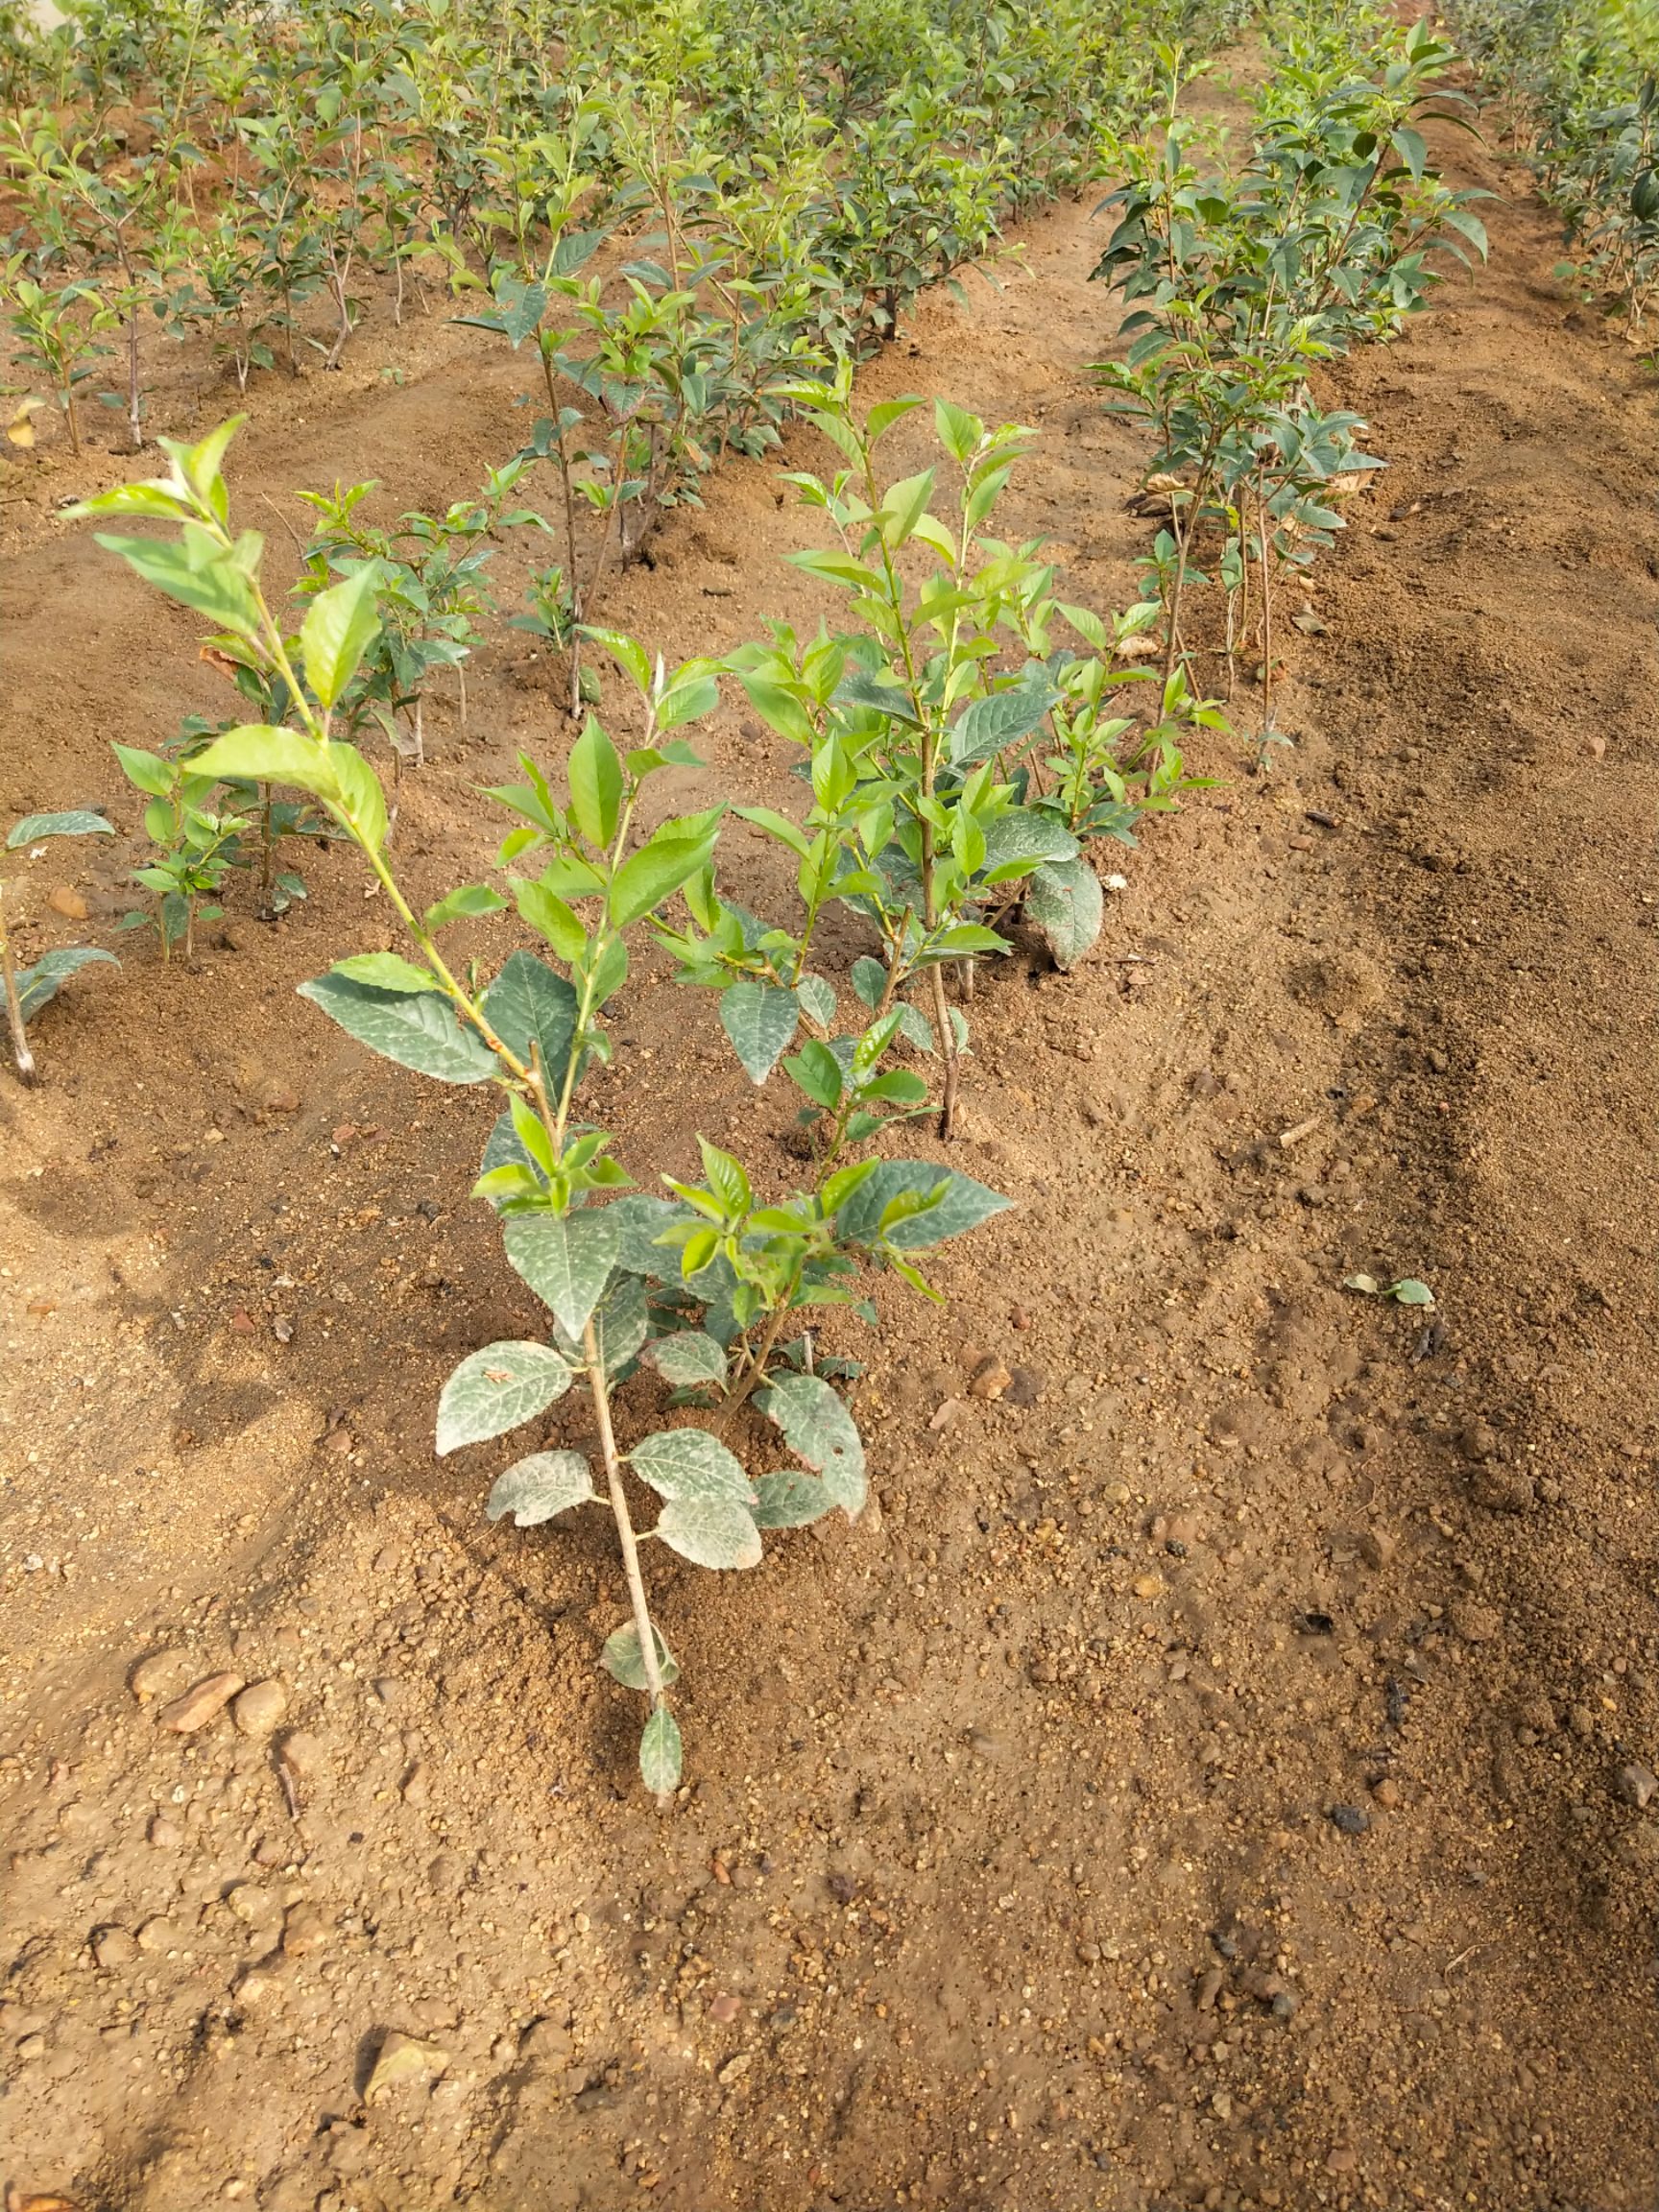 矮化樱桃苗能密植,栽种后2年见果,5年丰产,易管理,矮化樱桃苗树冠自然